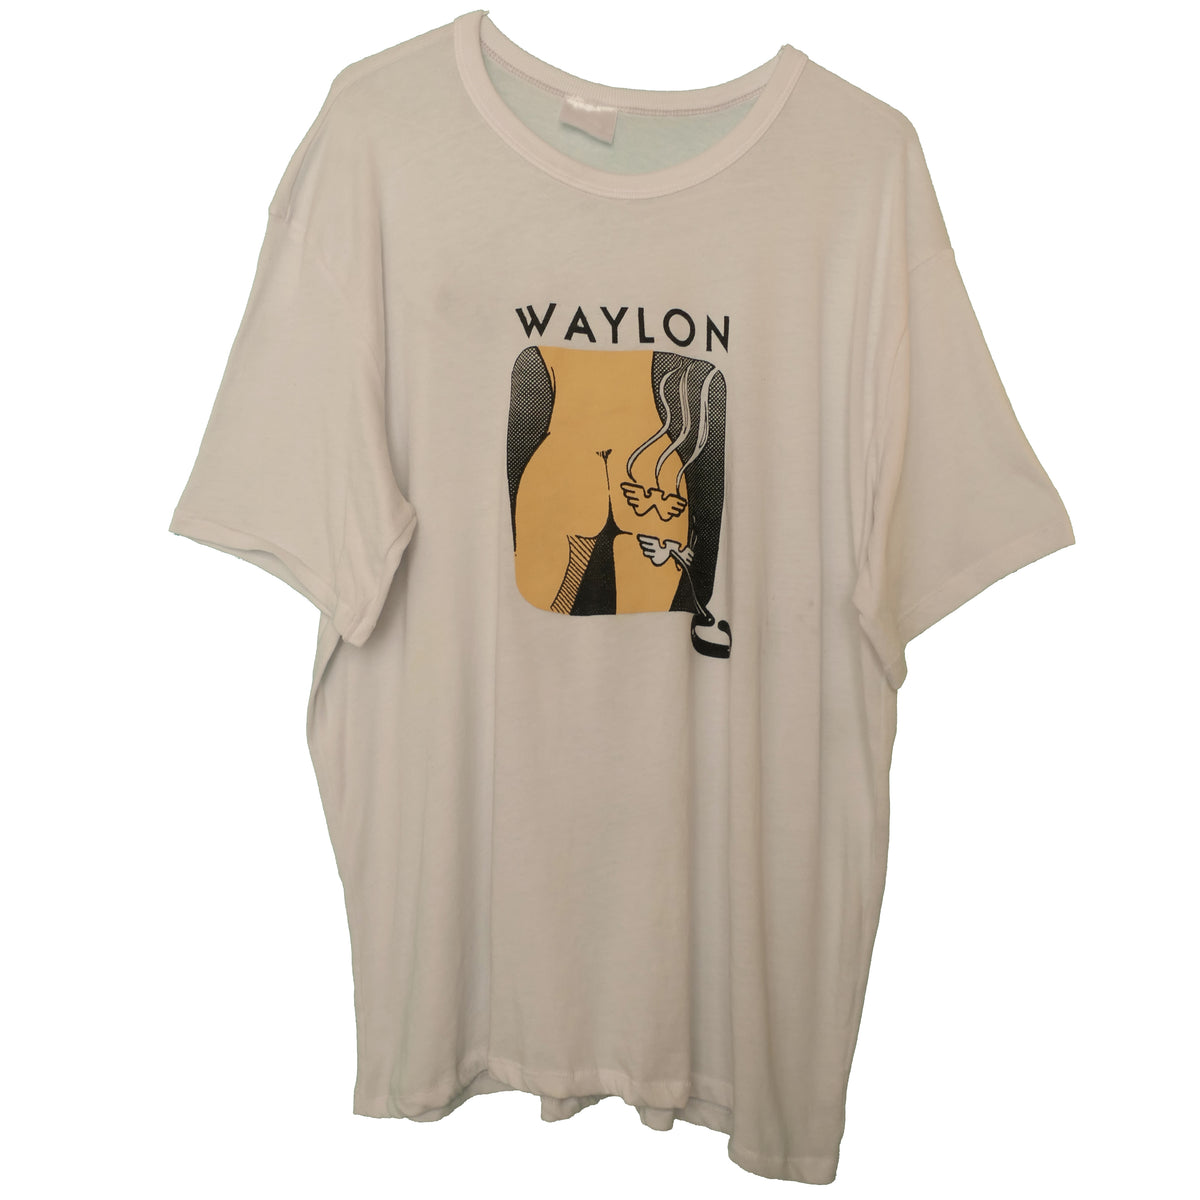 Waylon Jennings Tee